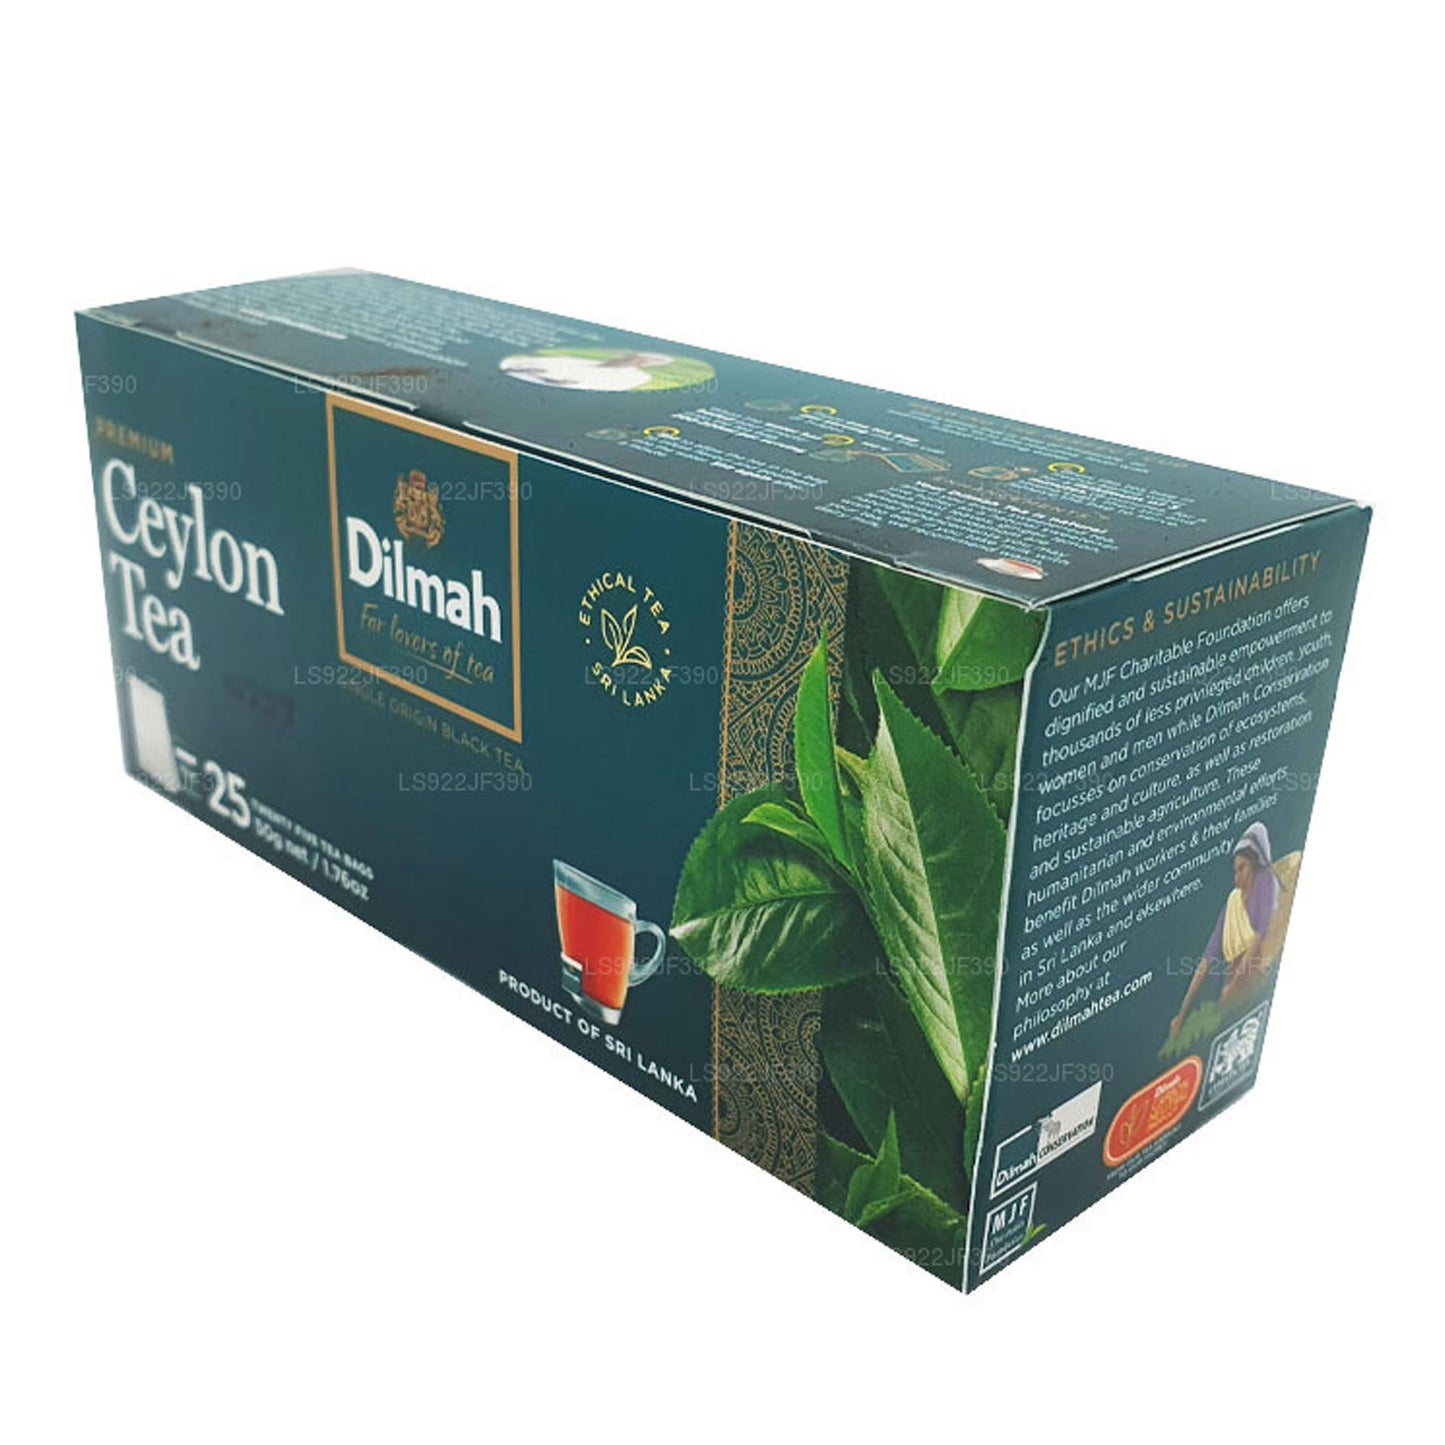 Dilmah Premium Seylan Çayı